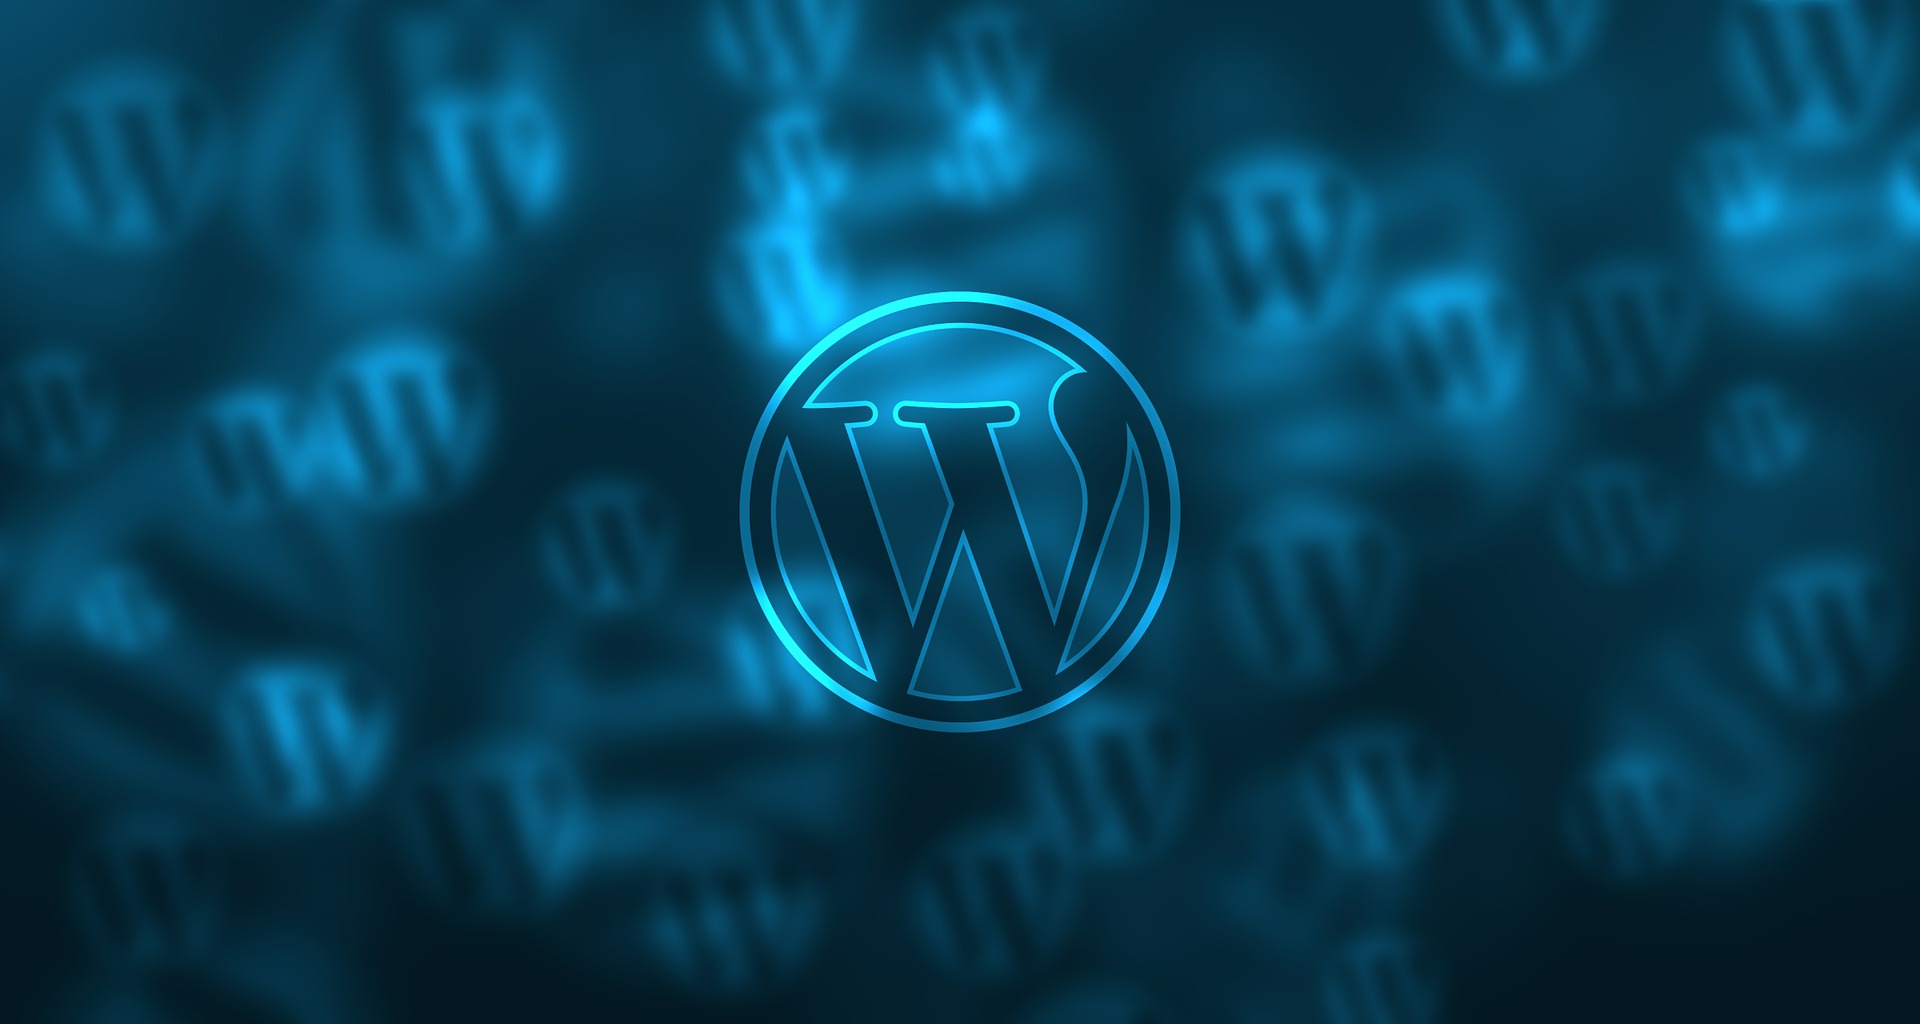 plugin WordPress